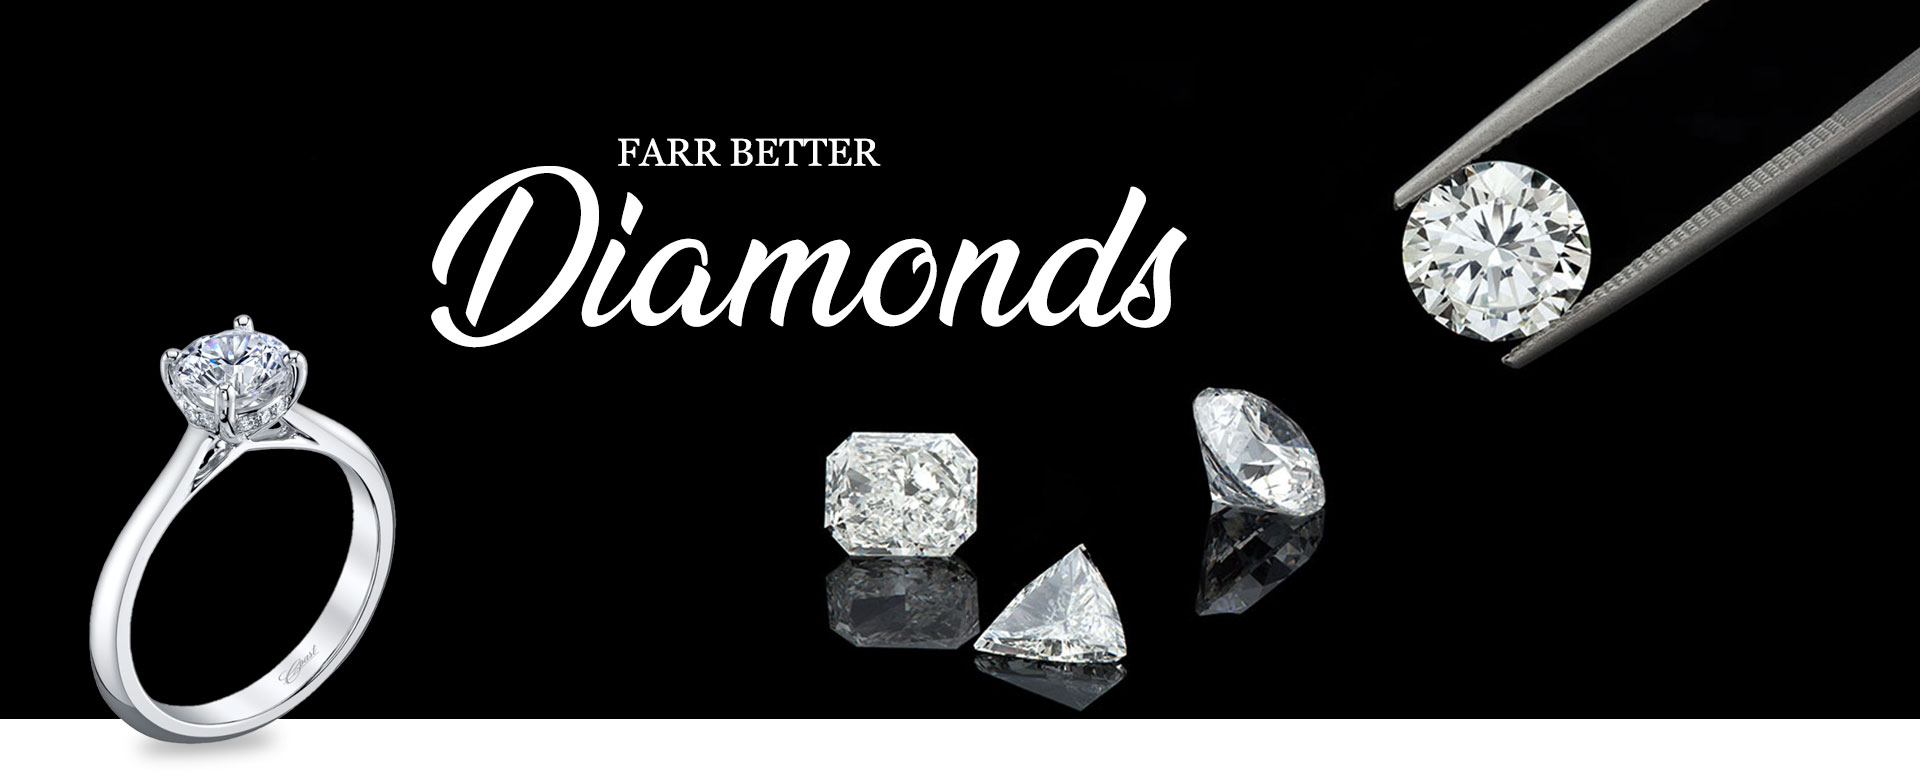 Farr better diamonds